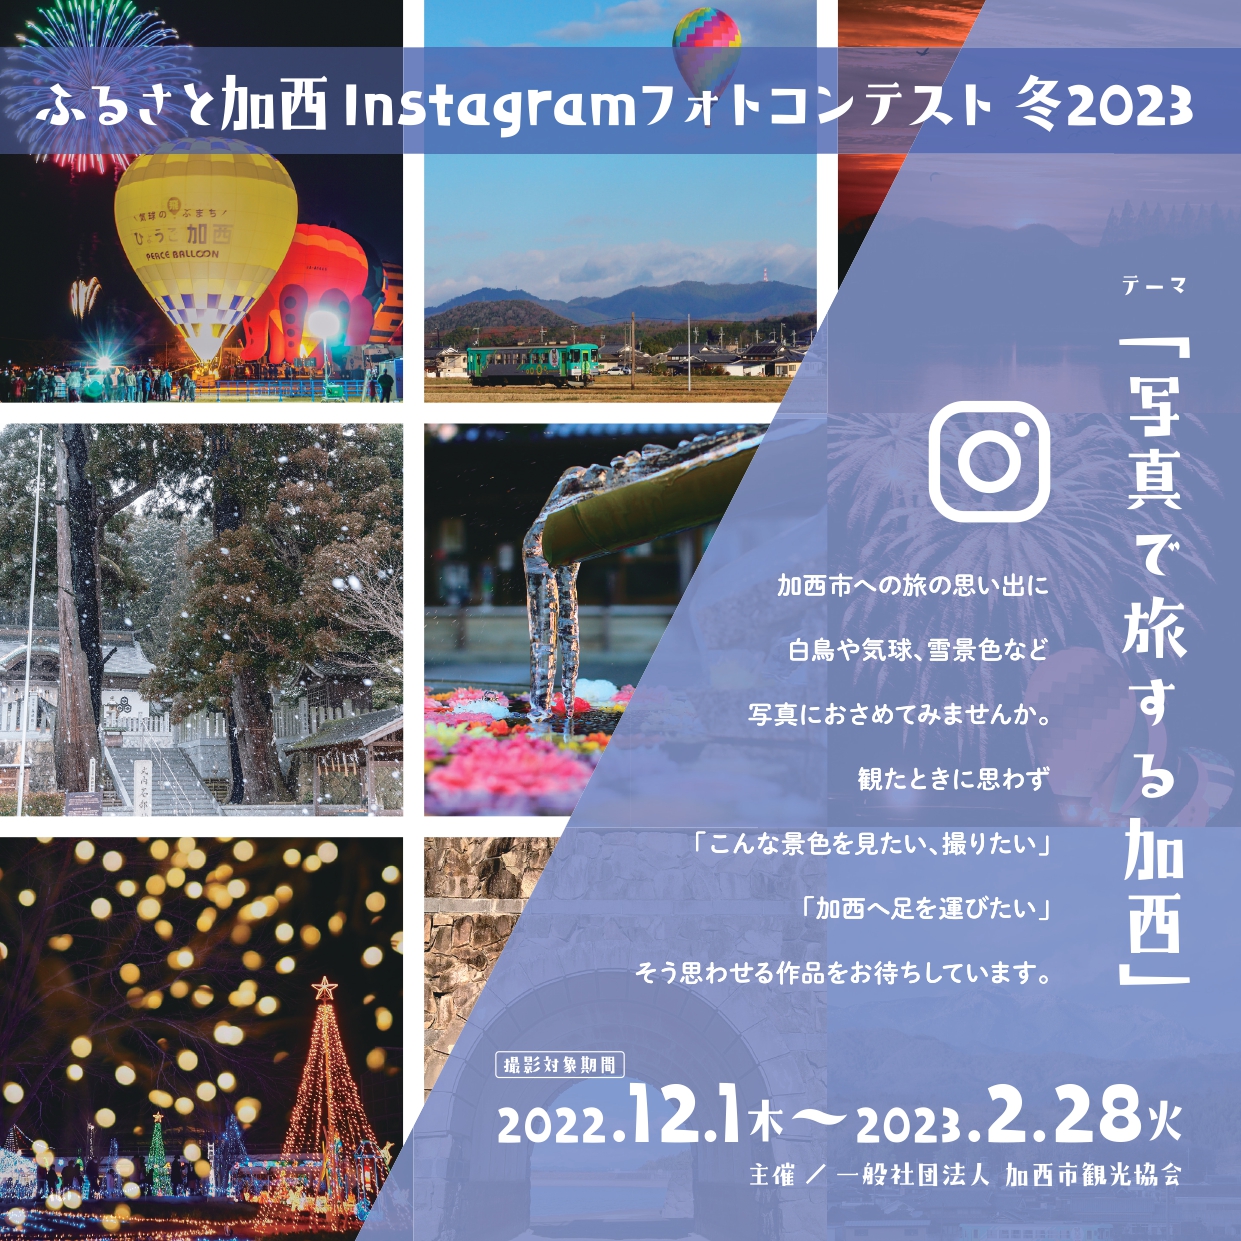 ふるさと加西Instagramフォトコンテスト冬2023